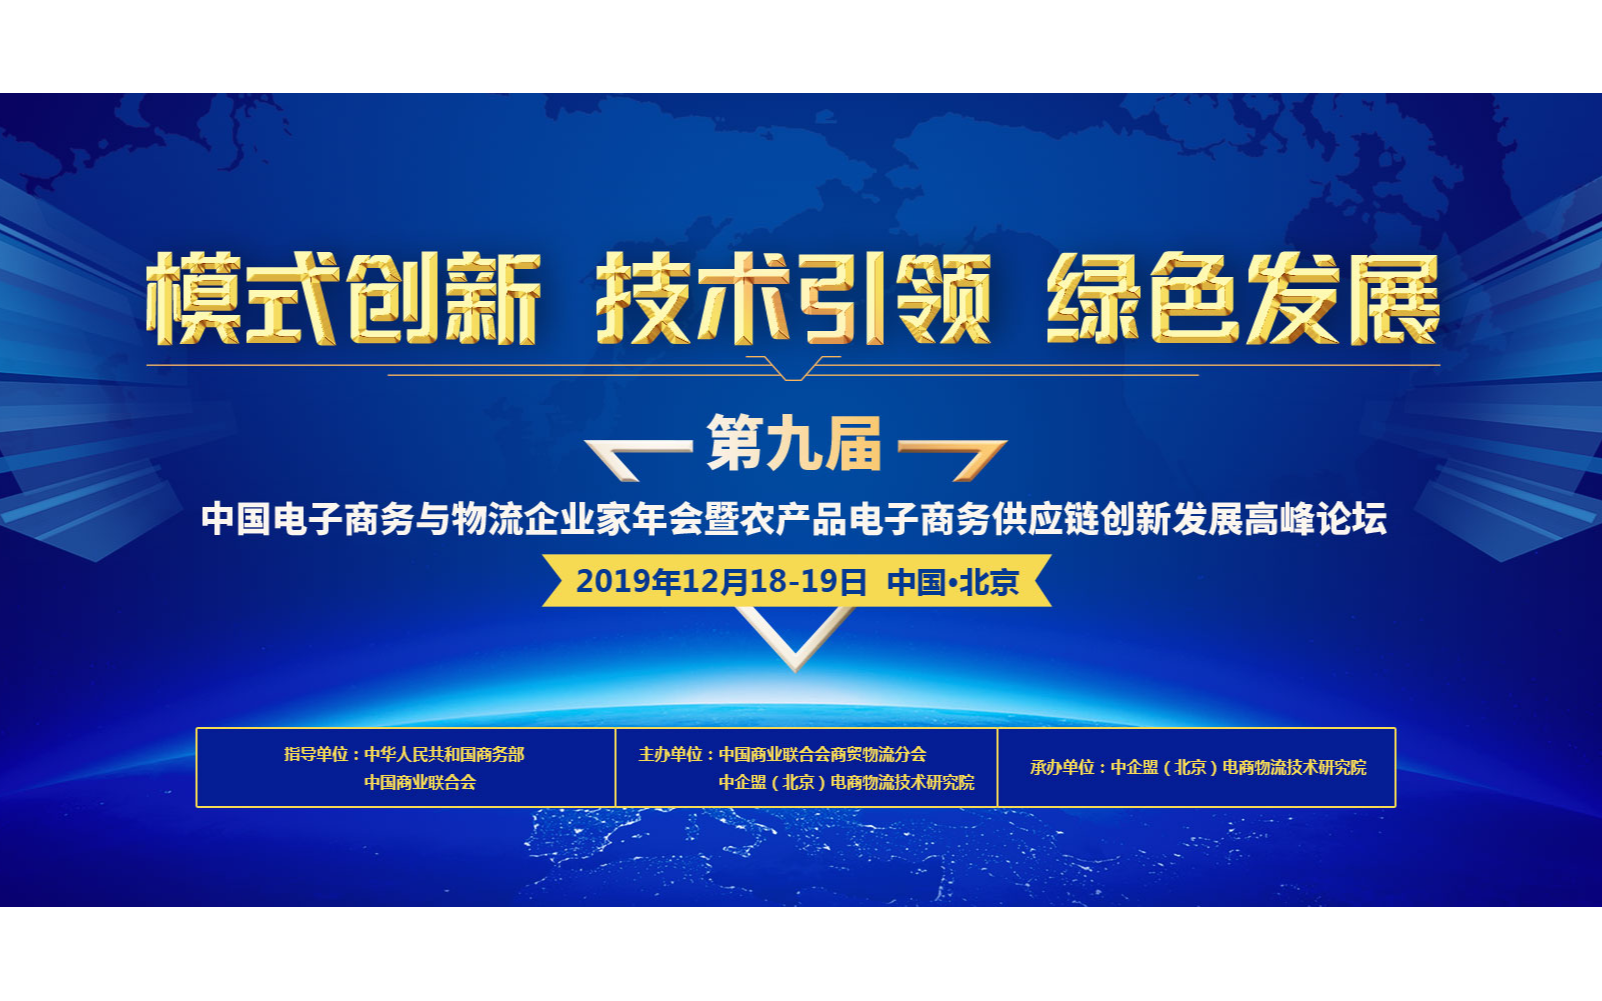 2019第九届中国电子商务与物流企业家年会暨农产品电子商务供应链创新发展高峰论坛（北京）